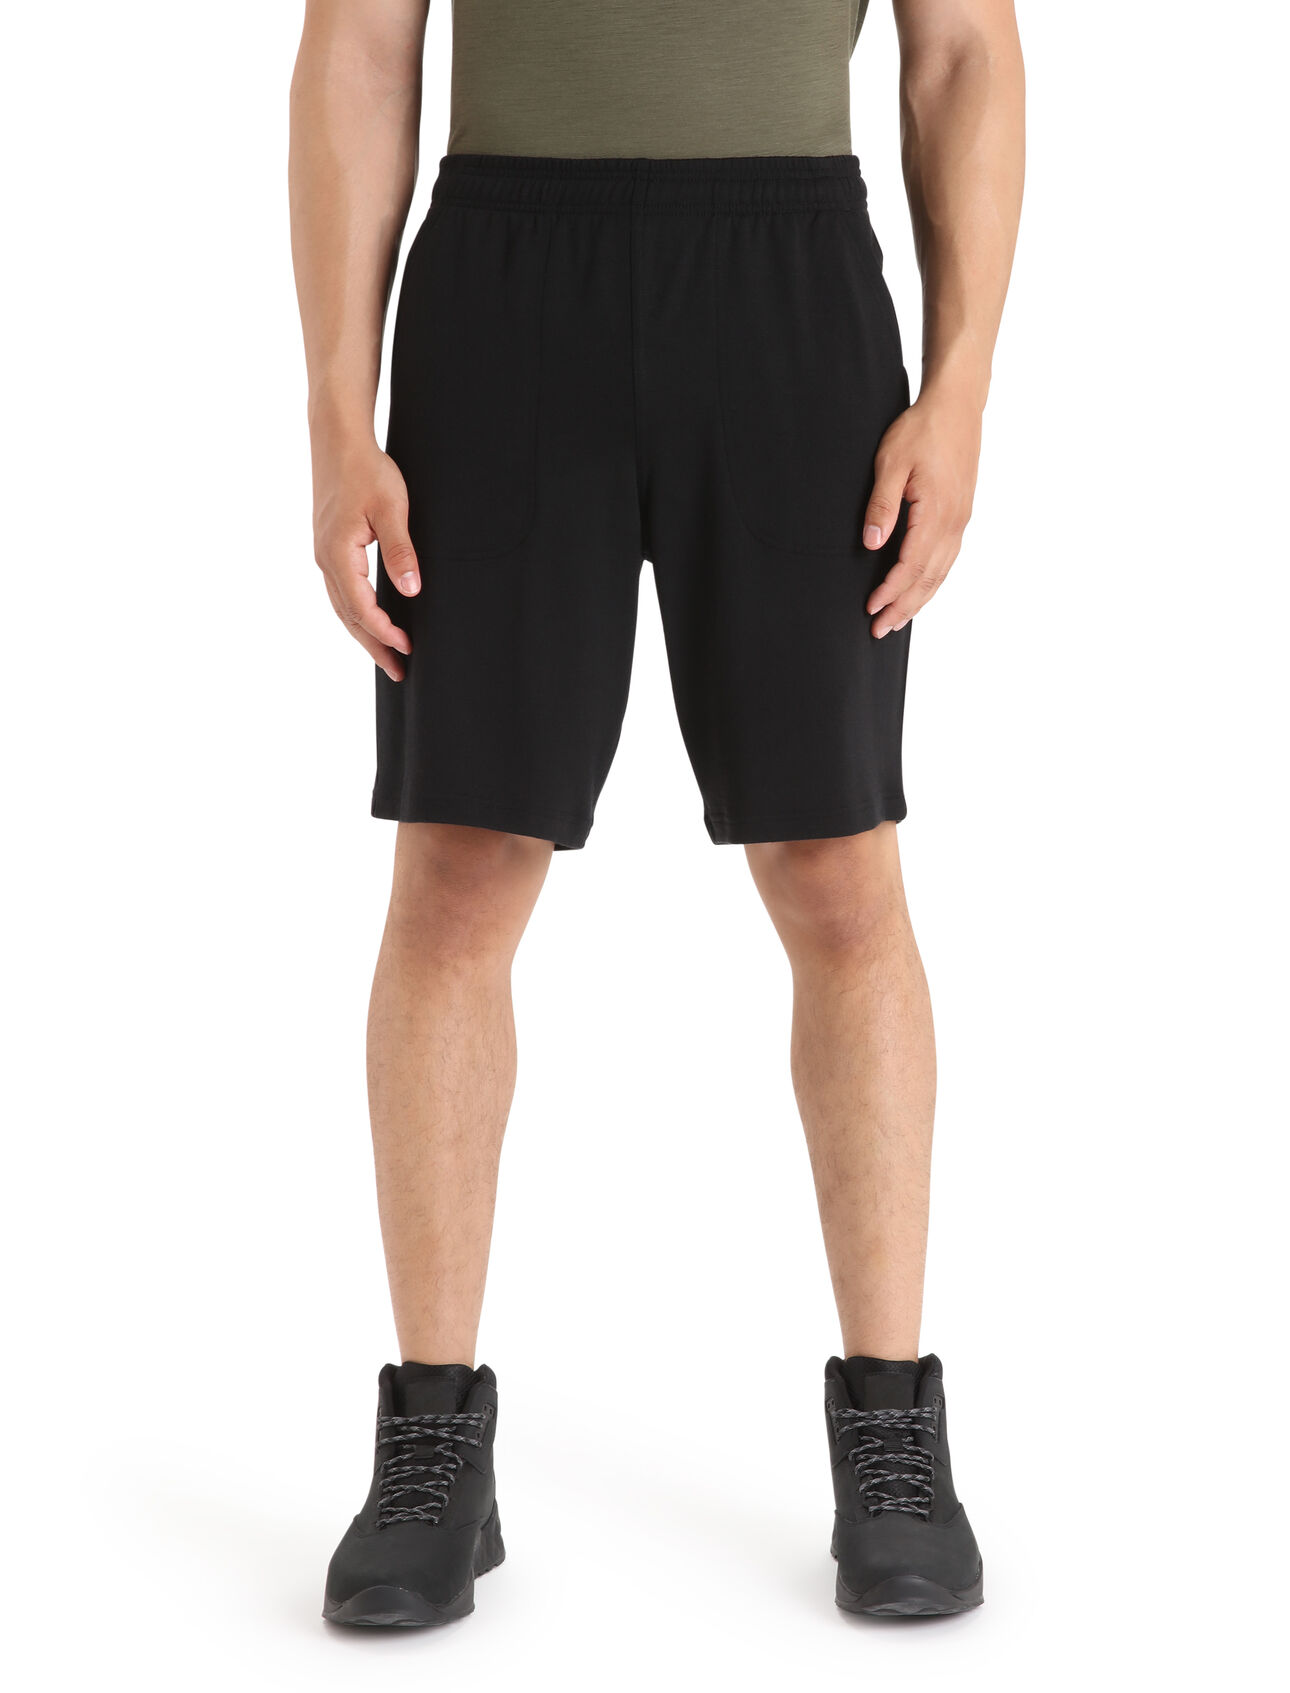 Merino Shifter Shorts Herren Klassische Sweatshorts aus 100% Merinowolle in weichem French Terry, die Shifter Shorts setzt auf modernen Style und höchsten Tragekomfort. 